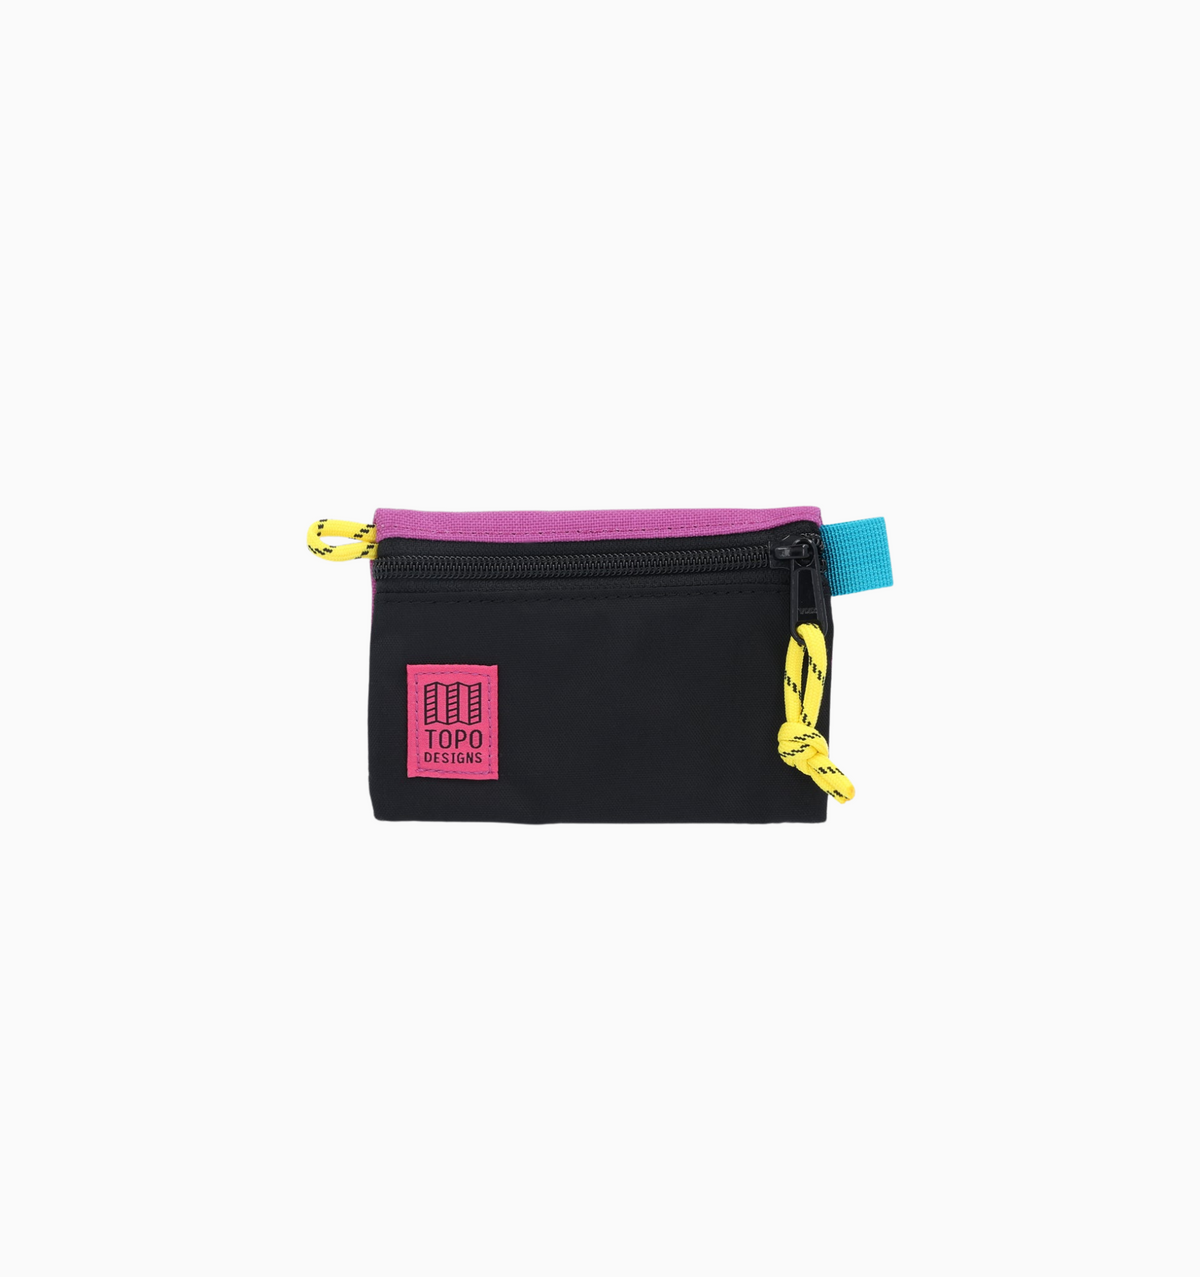 Topo Designs Micro Accessory Bag - Black Grape